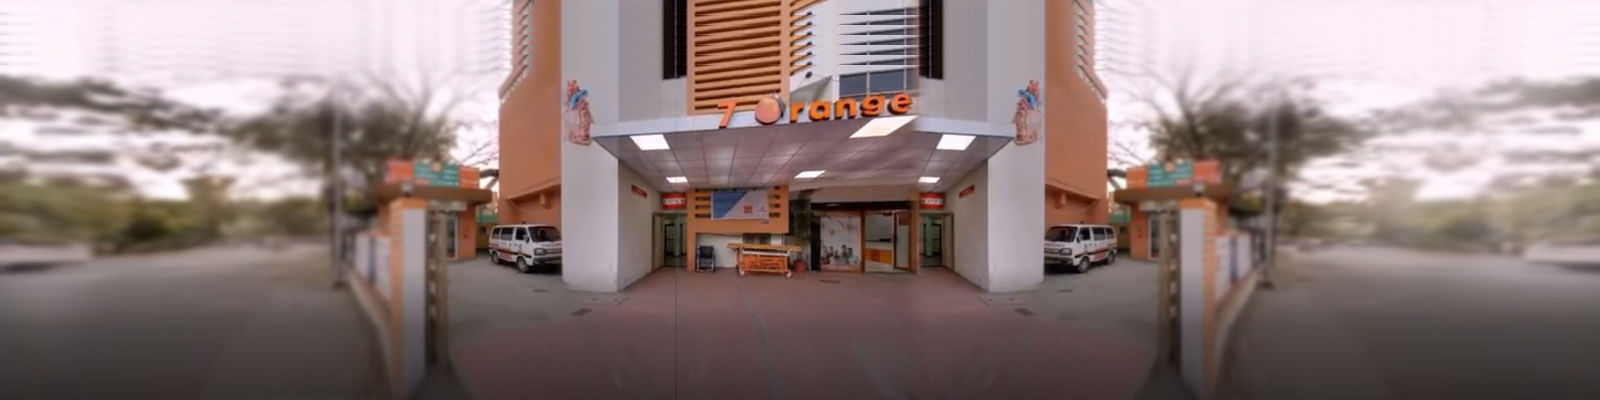 Dr. 7 Orange Hospital